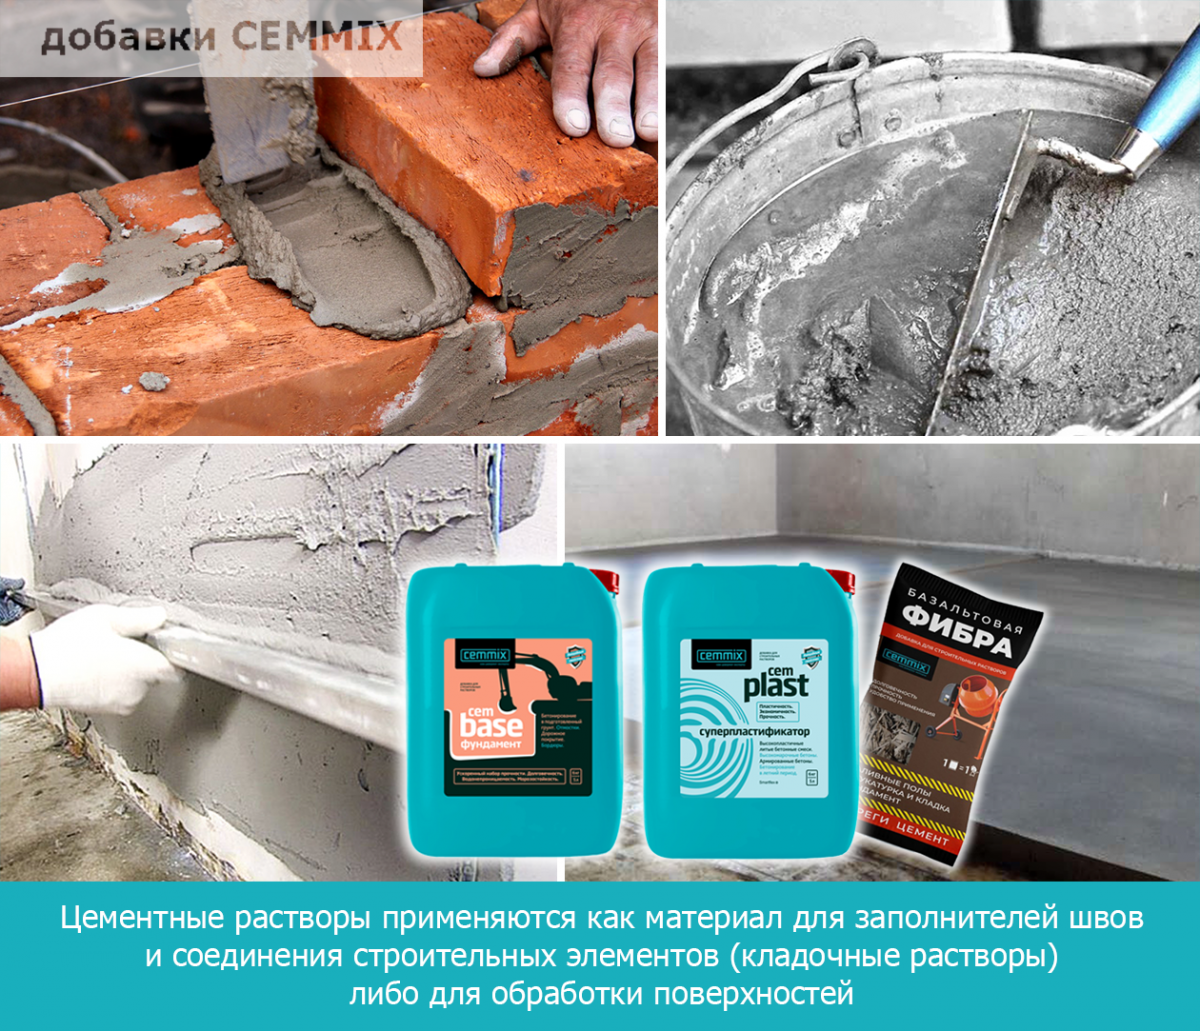 Цементные растворы применяются как материал для заполнителей швов и соединения строительных элементов (кладочные растворы) либо для обработки поверхностей